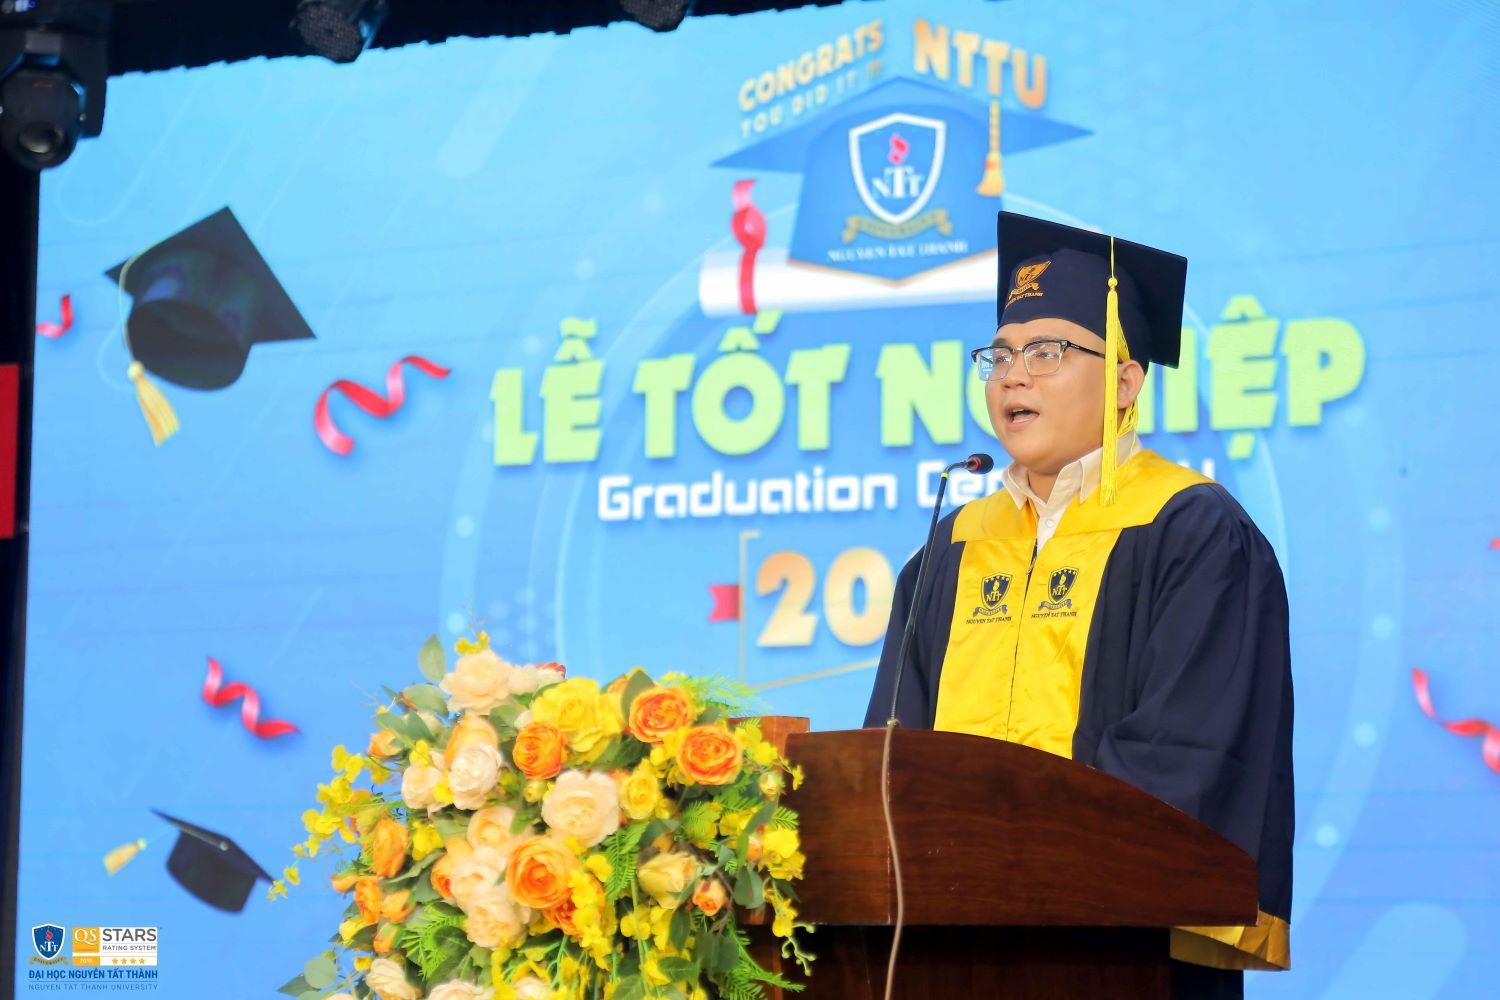 Trường ĐH Nguyễn Tất Thành tổ chức lễ tốt nghiệp cho hơn 1000 Tân Cử nhân, Dược sỹ, Kỹ sư - Ảnh 2.